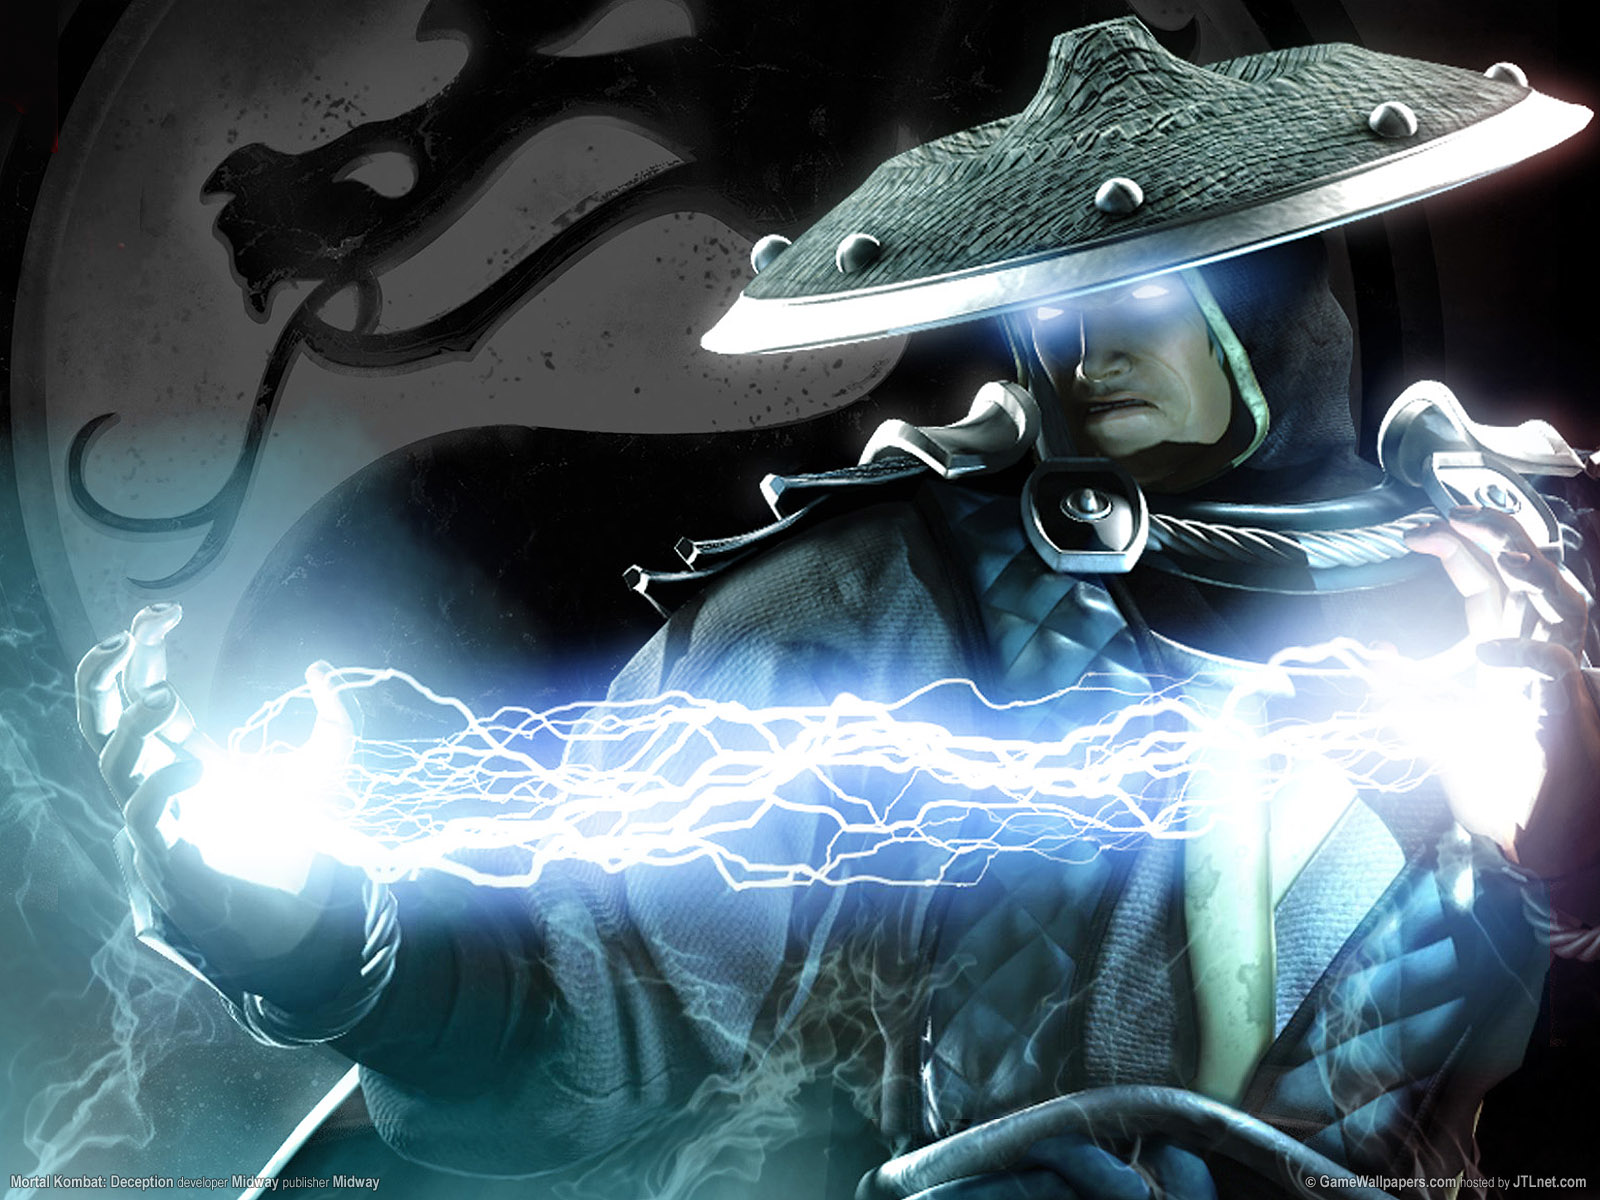 Meilleurs fonds d'écran Mortal Kombat: Mystification pour l'écran du téléphone